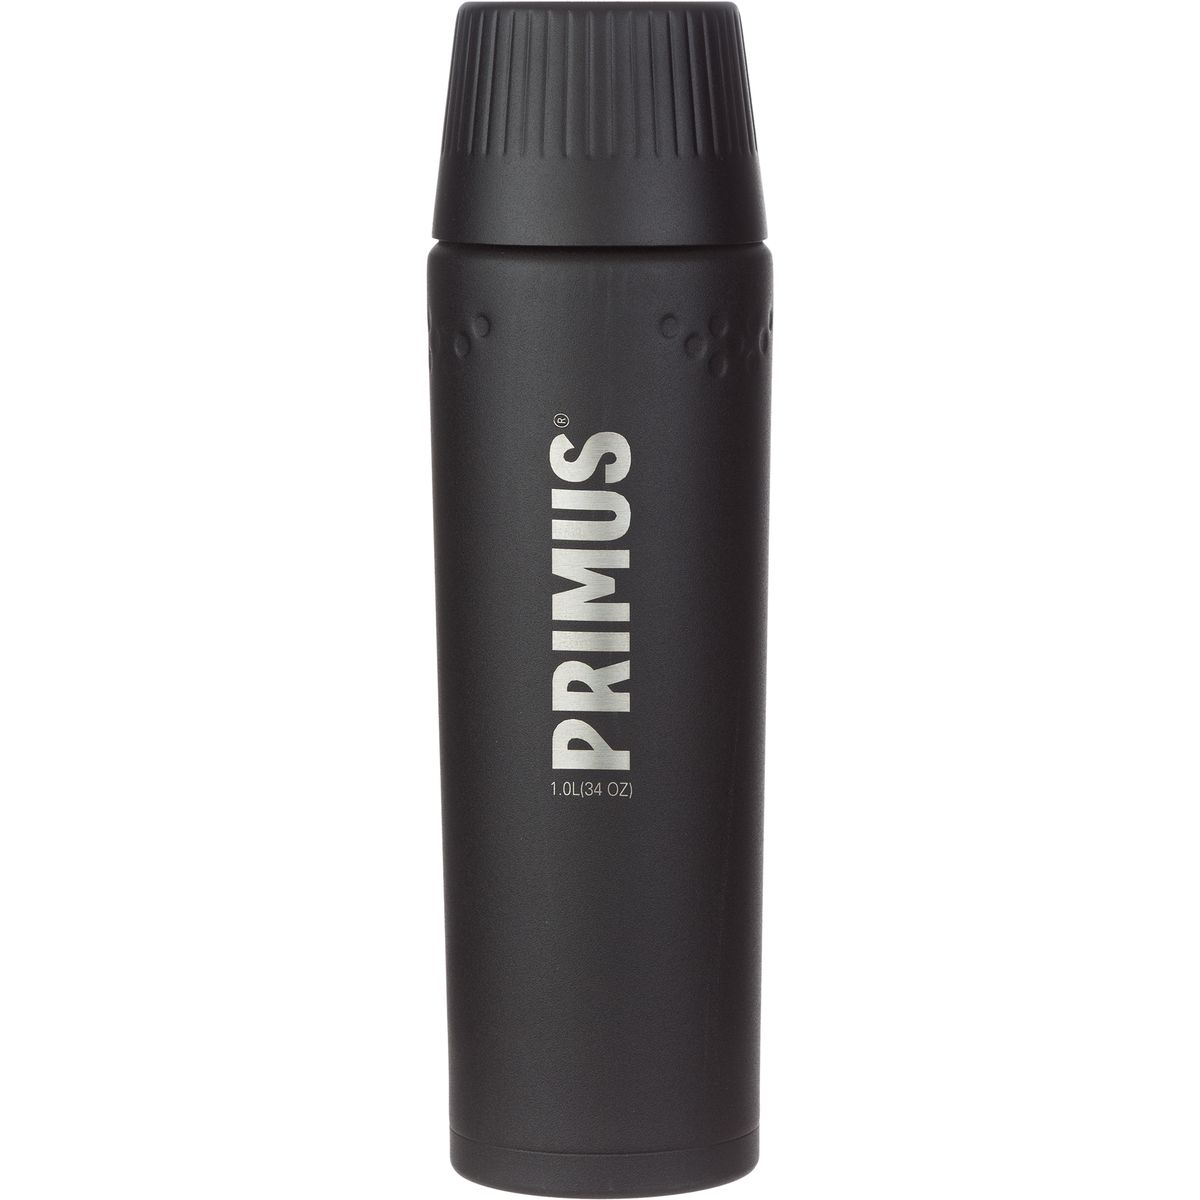 Primus Trailbreak Vacuum Insulated Bottle